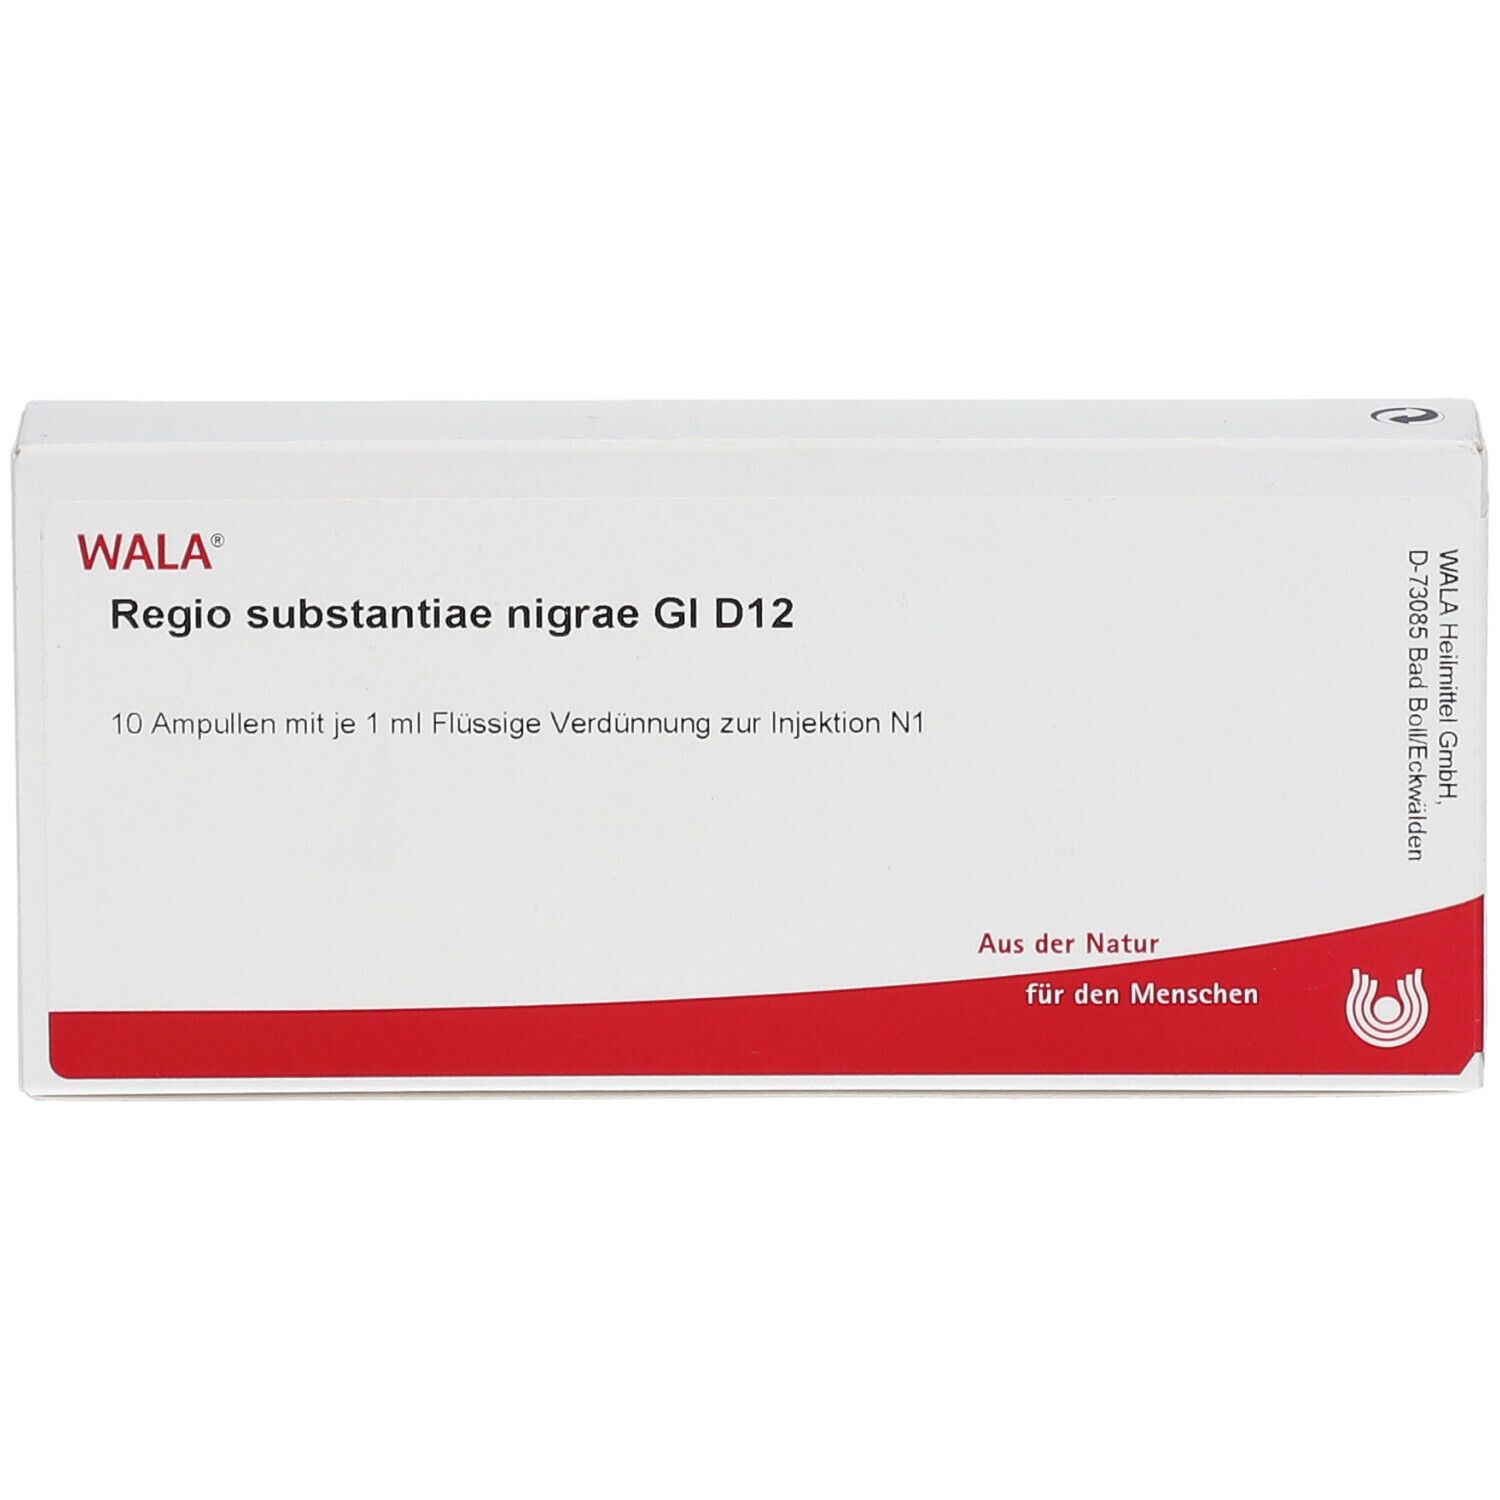 WALA® Regio substantiae nigrae Gl D 12